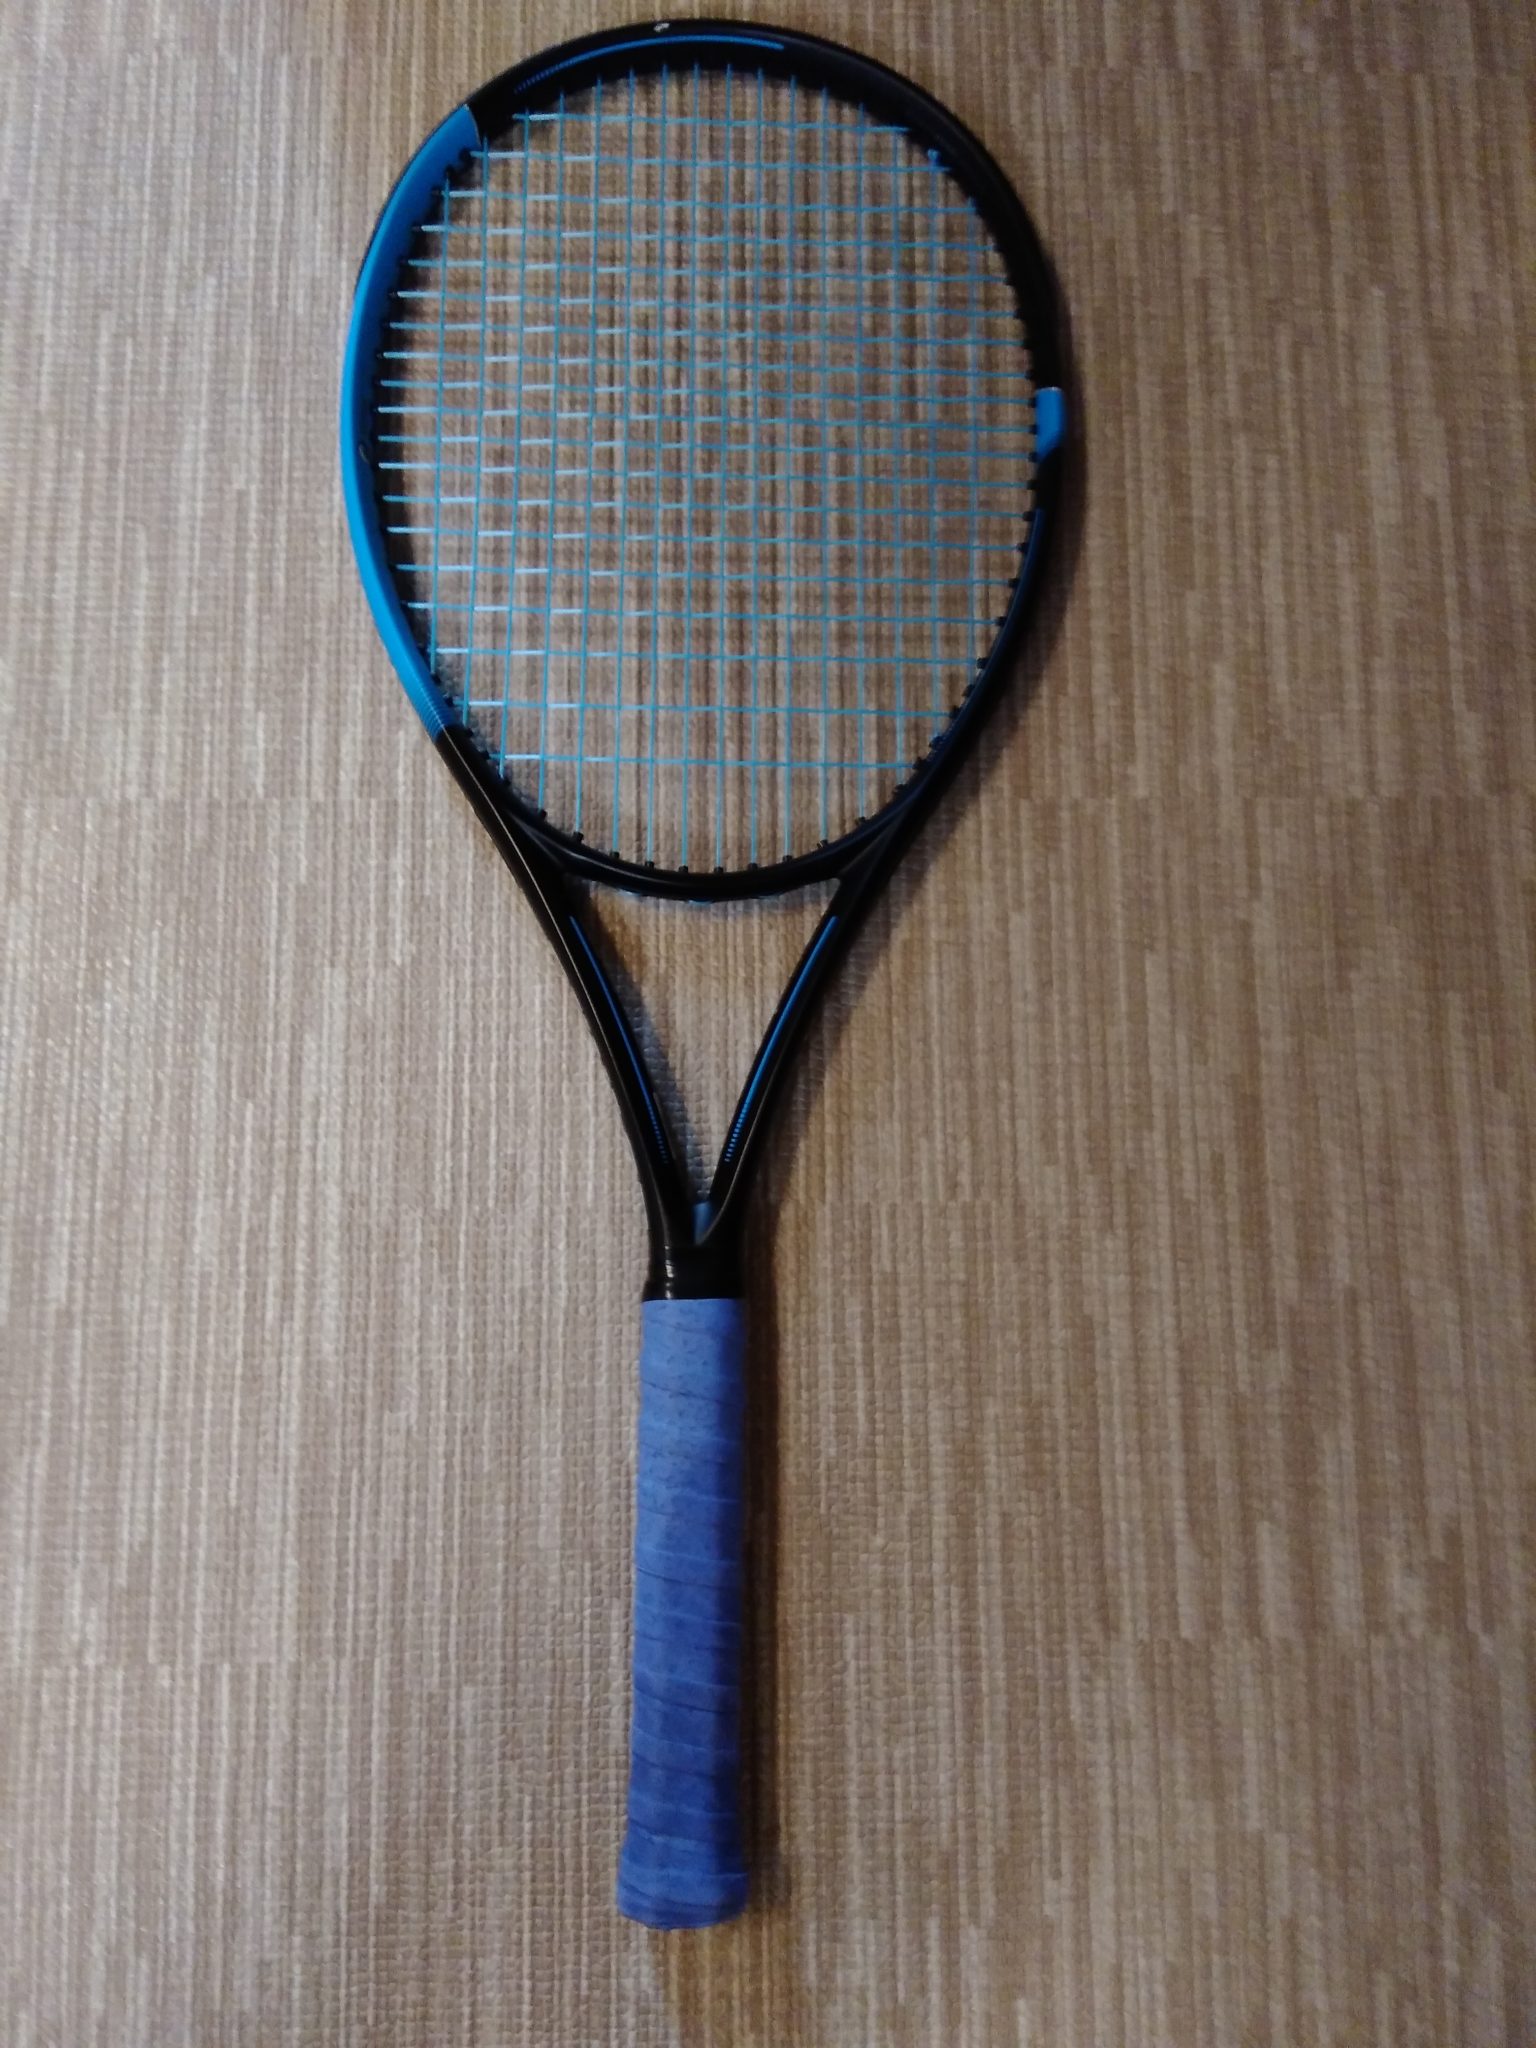 テニスラケット ダンロップ 200G (G3)DUNLOP 200G